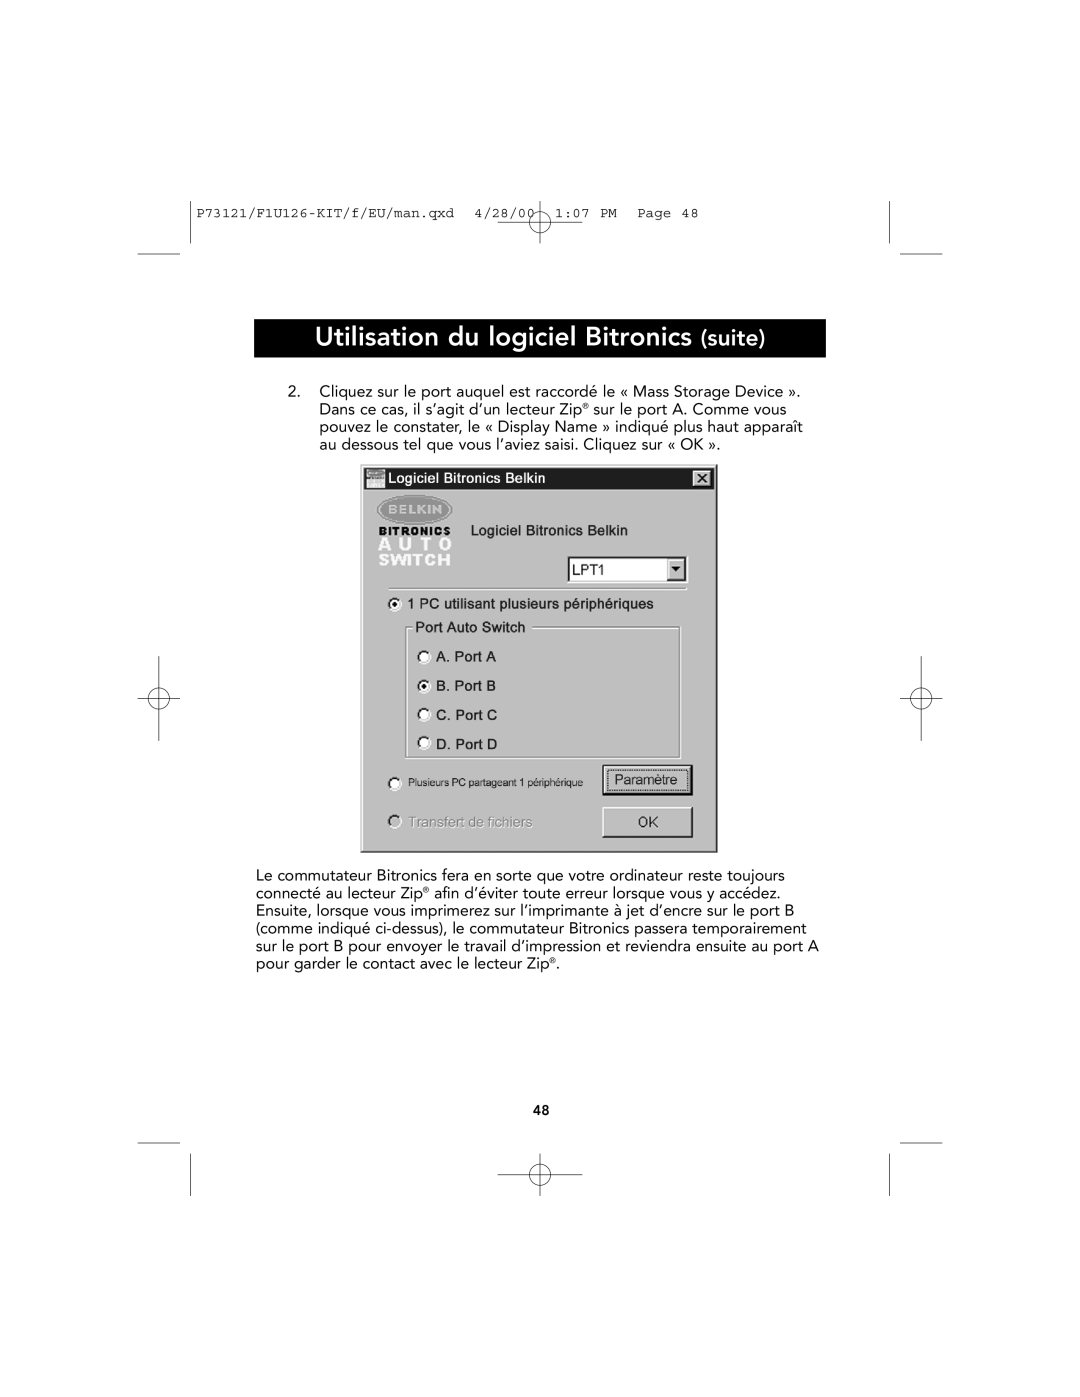 Belkin P73121, F1U126-KIT user manual Utilisation du logiciel Bitronics suite 